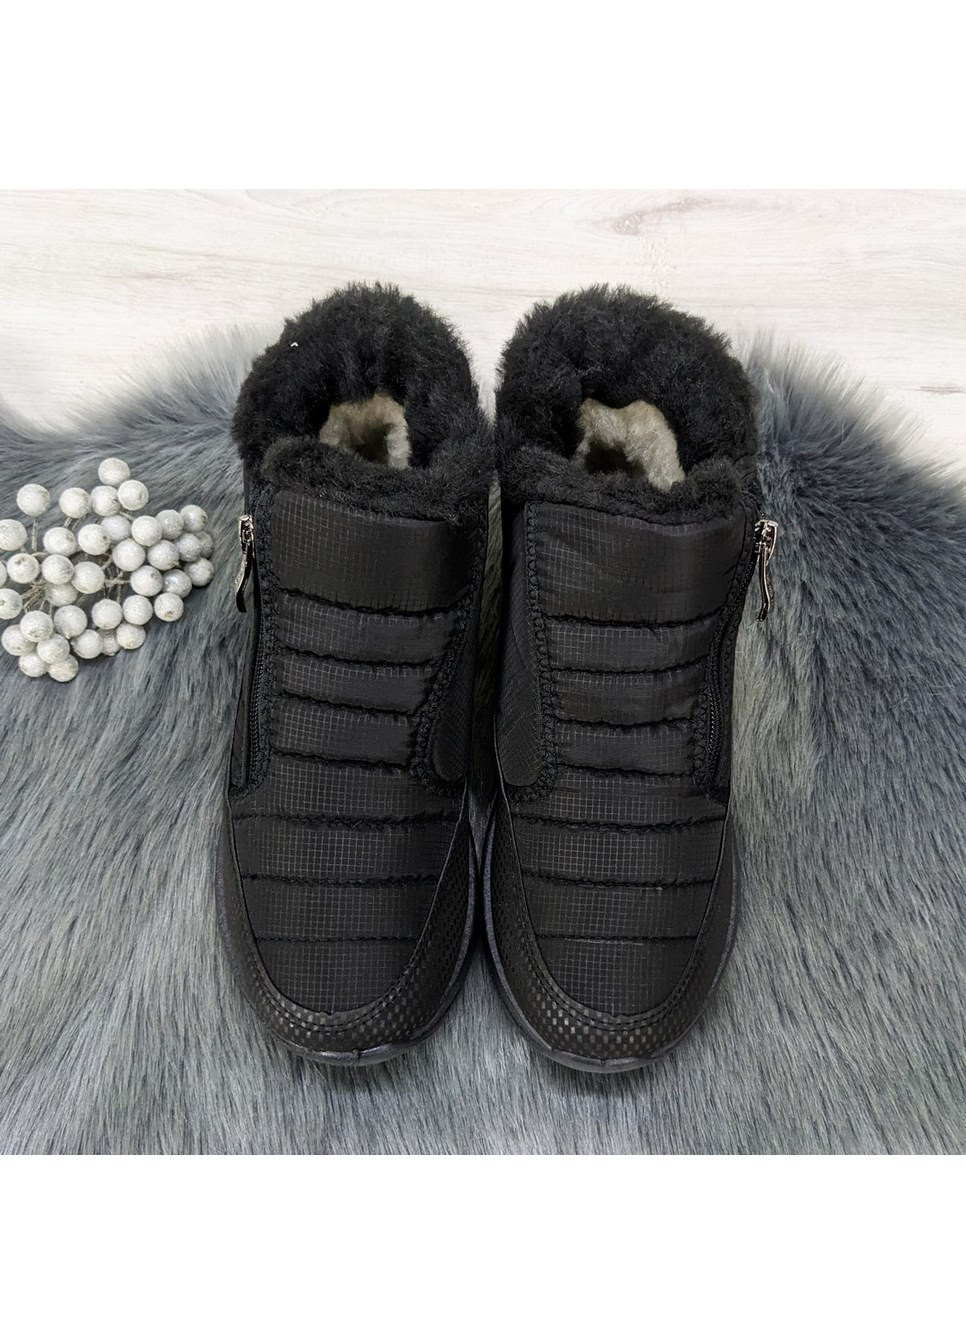 Зимние ботинки дутики женские на шнурках SV тканевые